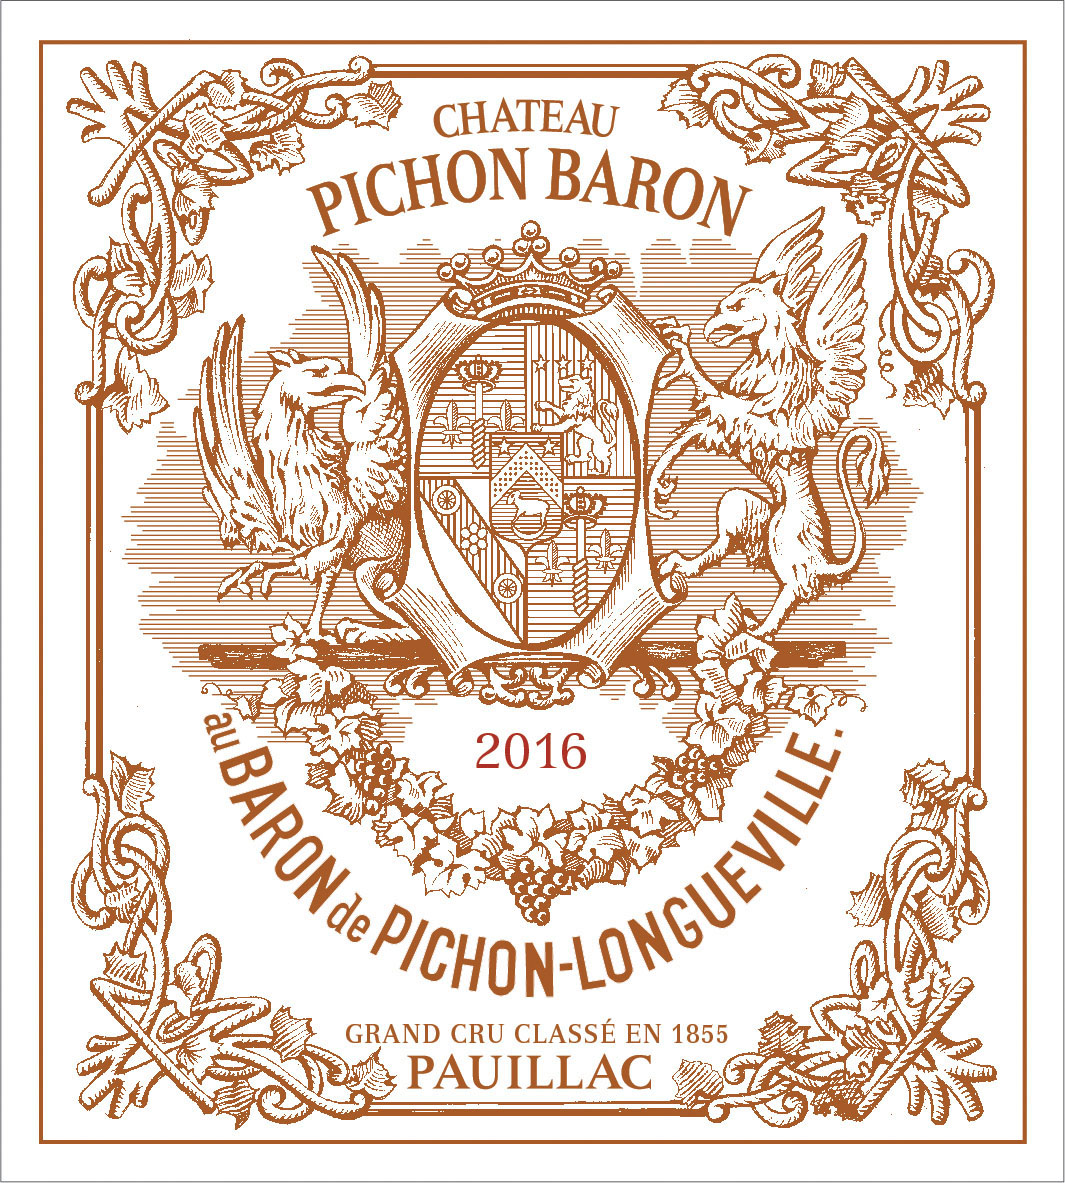 Chateau Pichon-Longueville Baron label